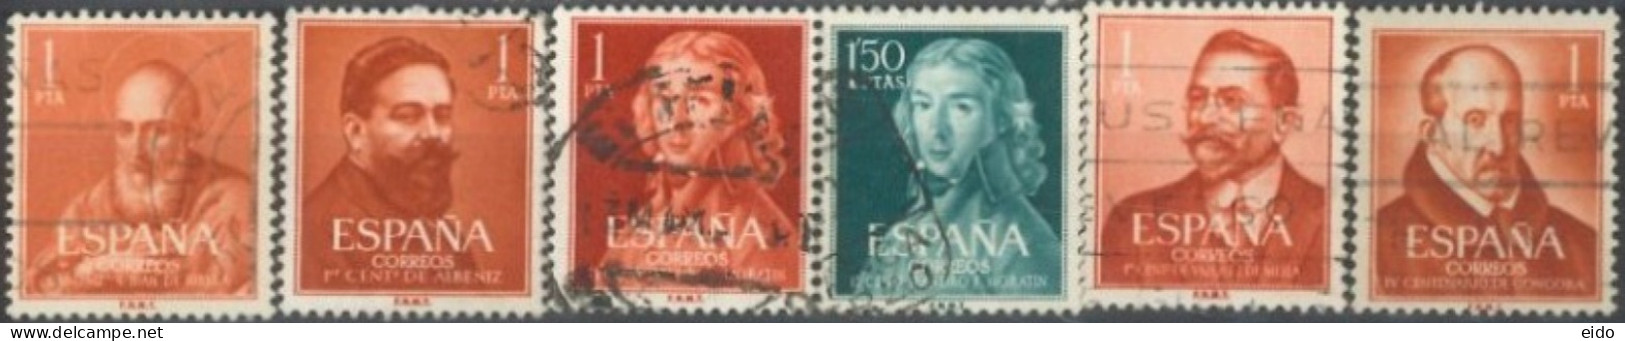 SPAIN, 1960/61, SAINTS & CELEBRITIES STAMPS SET OF 6, USED. - Usati